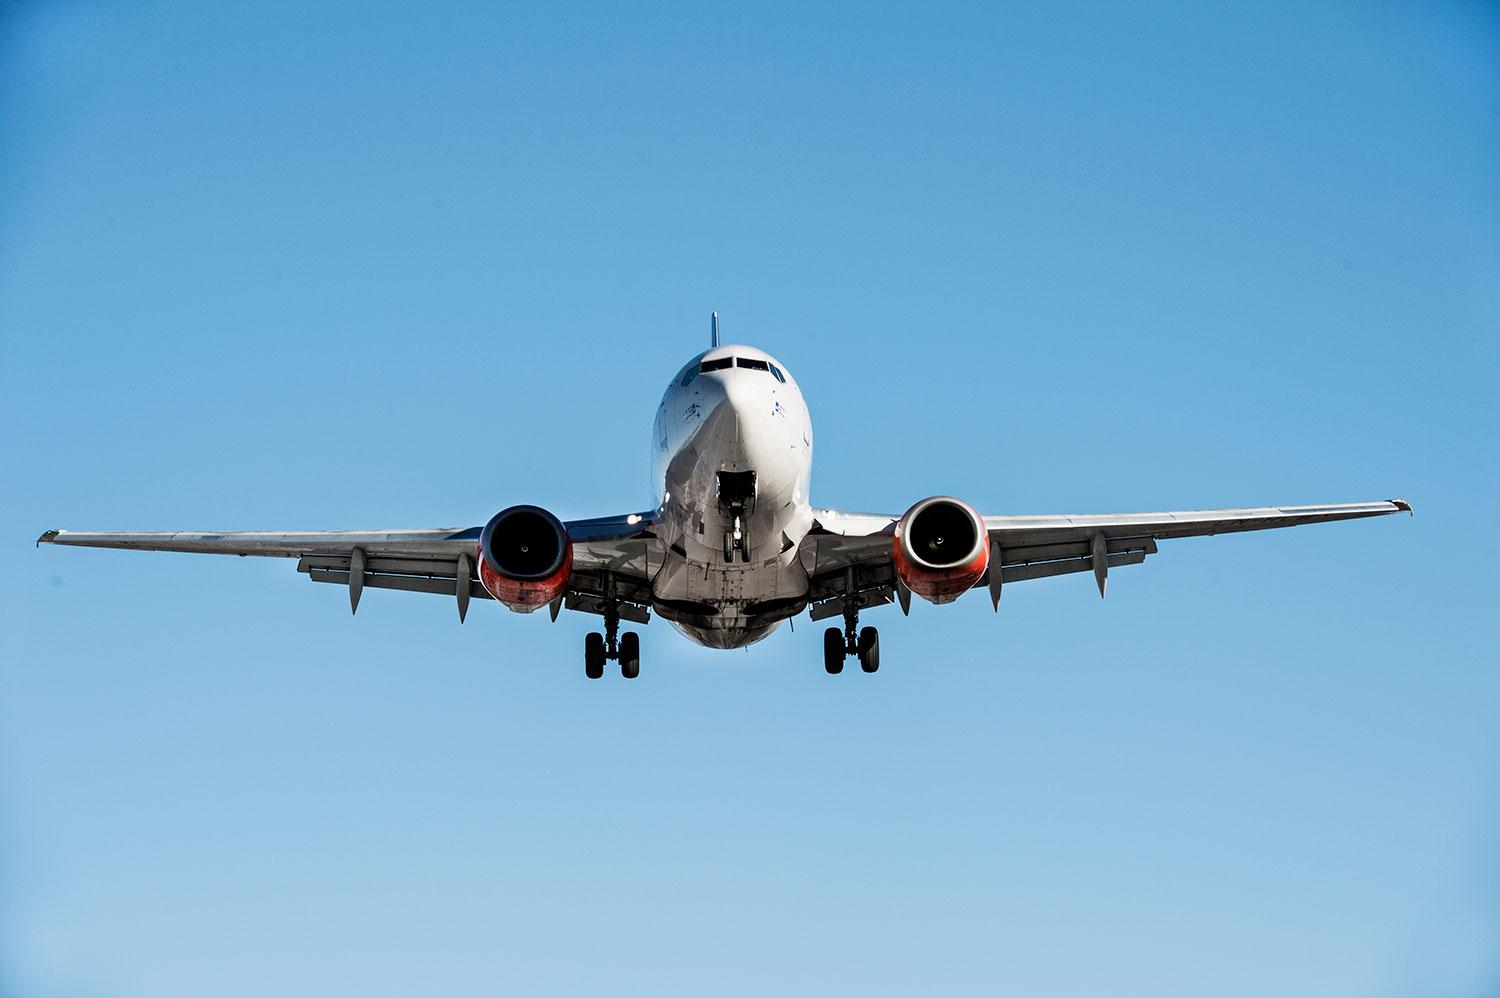 Sedan 1990-talet har ny teknik minskat bränsleförbrukningen per flygpassagerare med 2,6 procent per år.